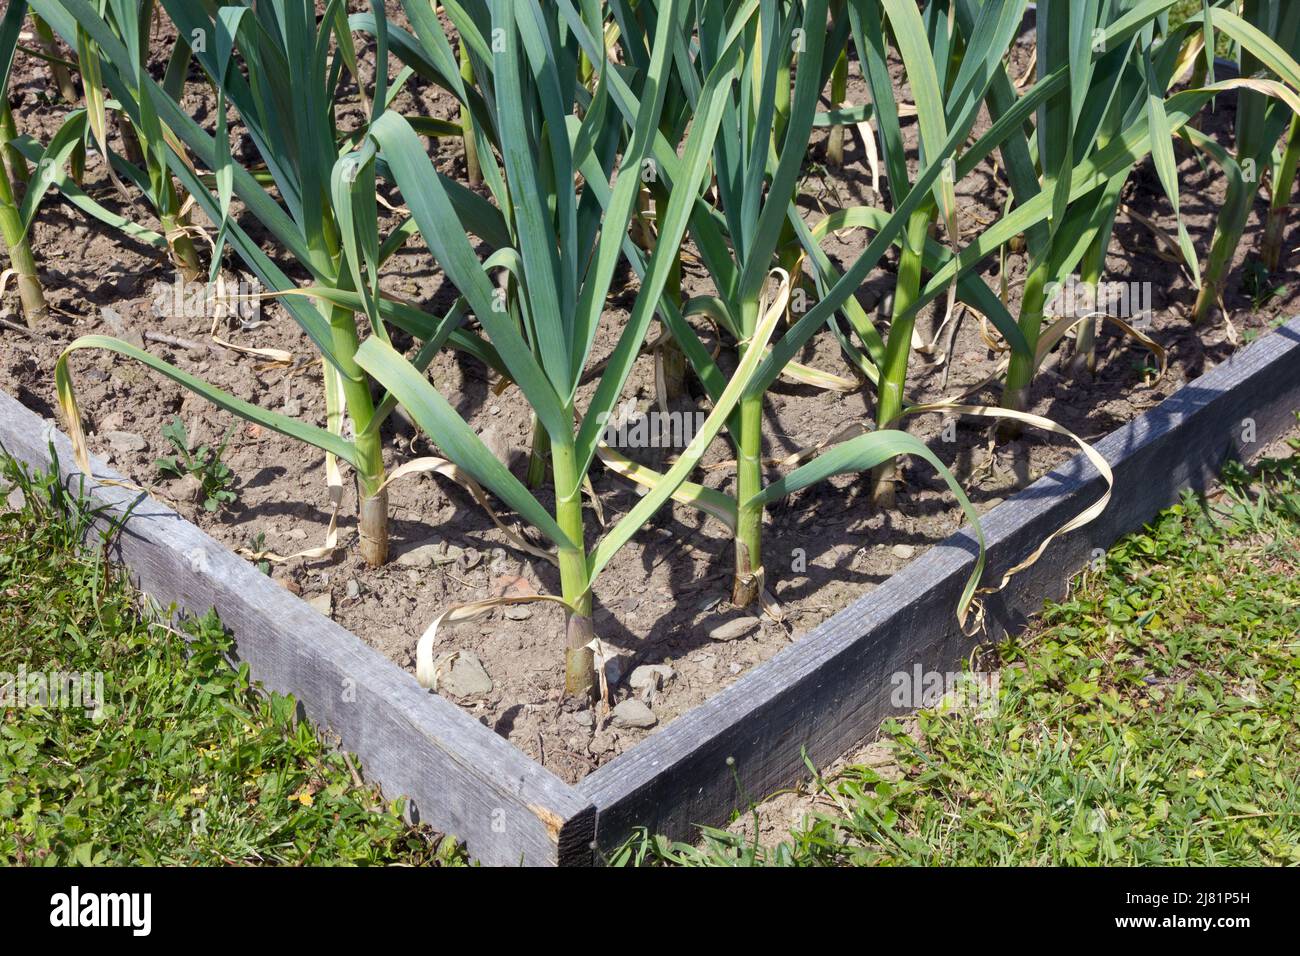 Garlic plants in a vegetable garden Stock Photo